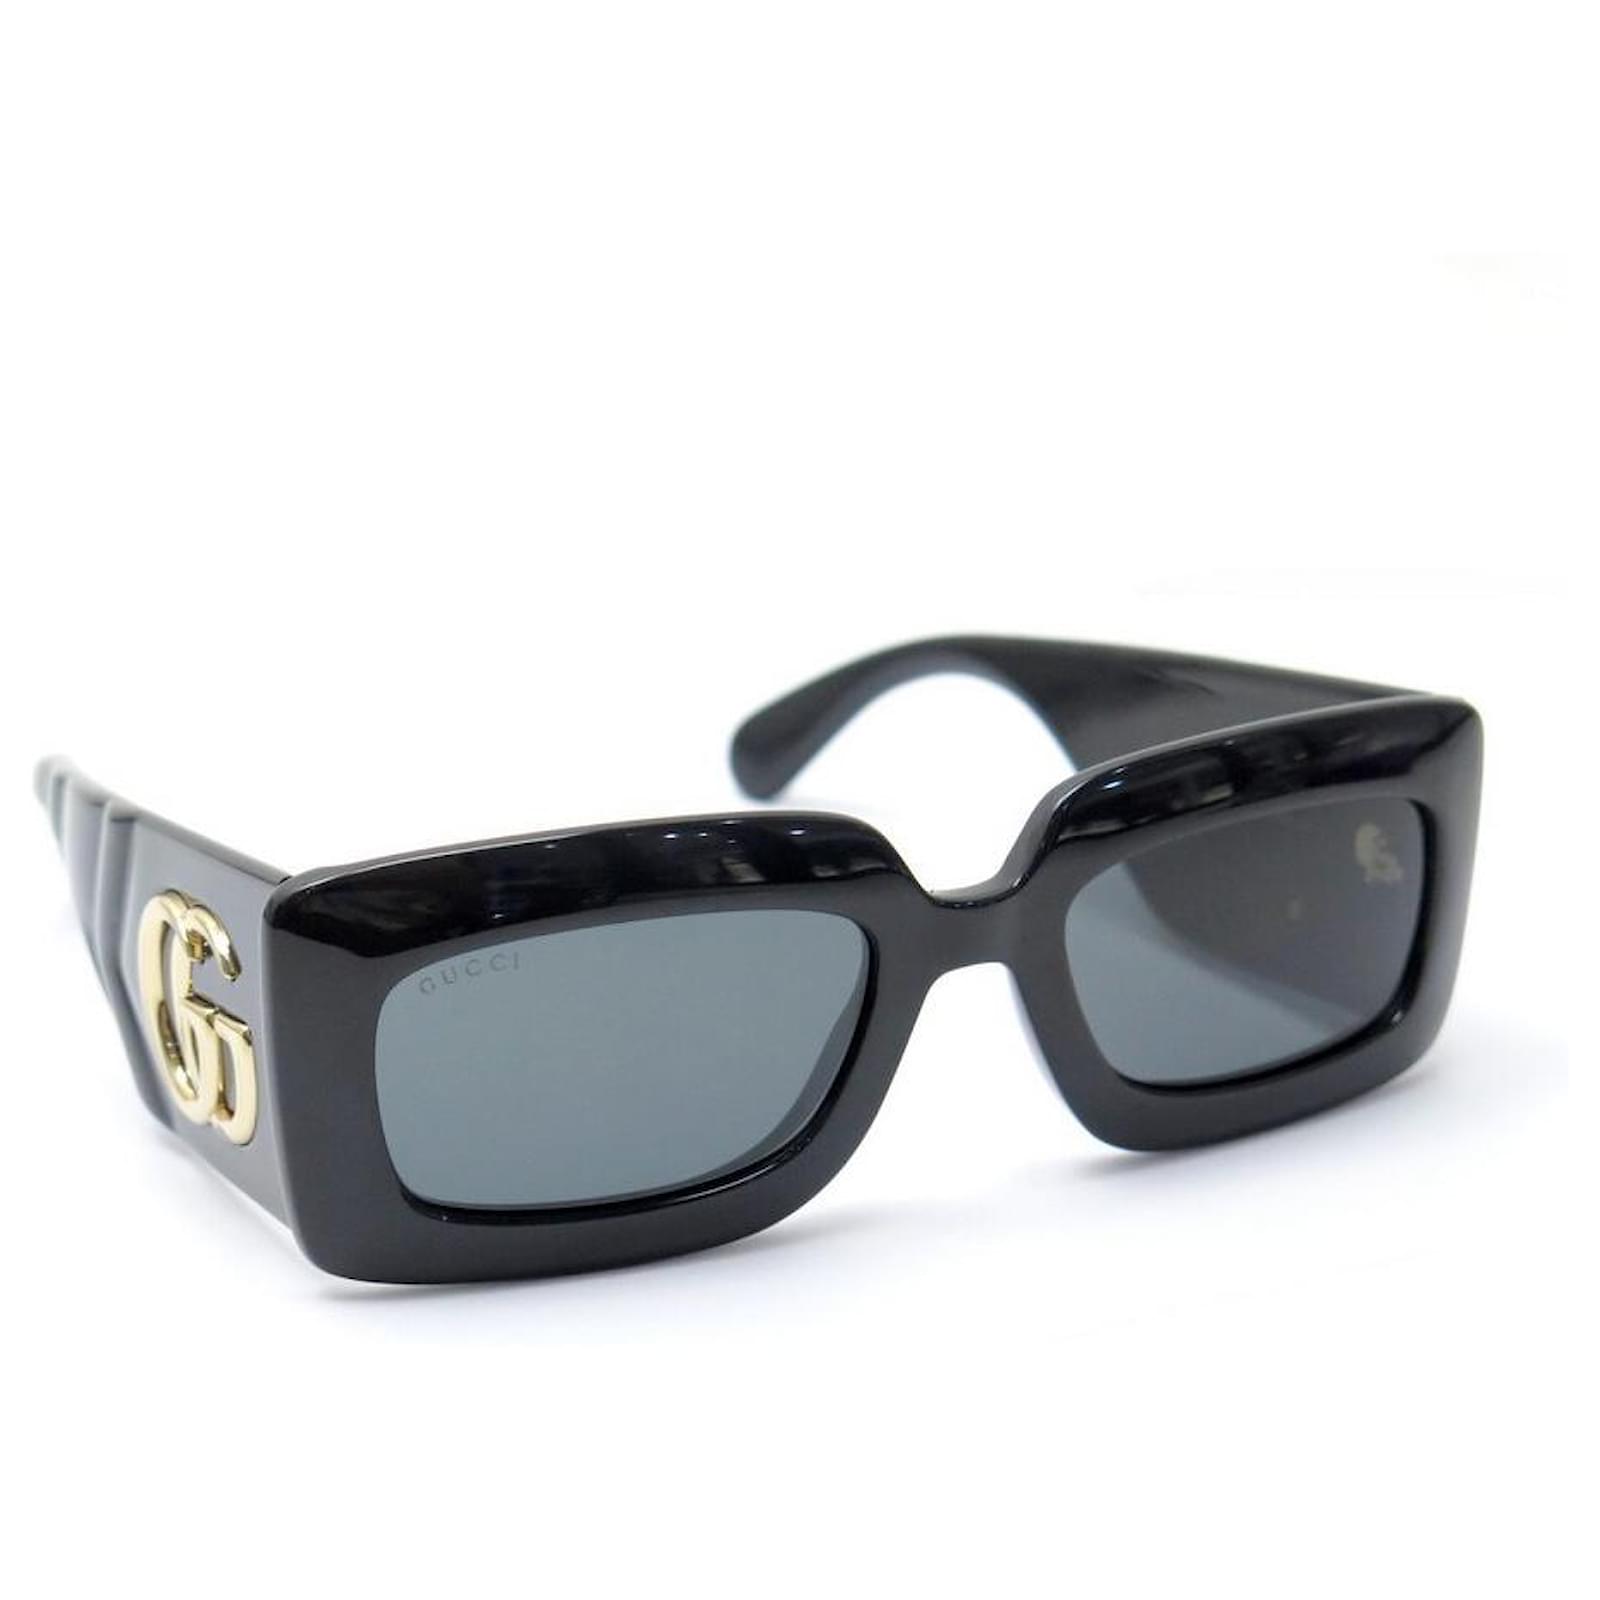 Gucci GG0811S Women Sunglasses - Black